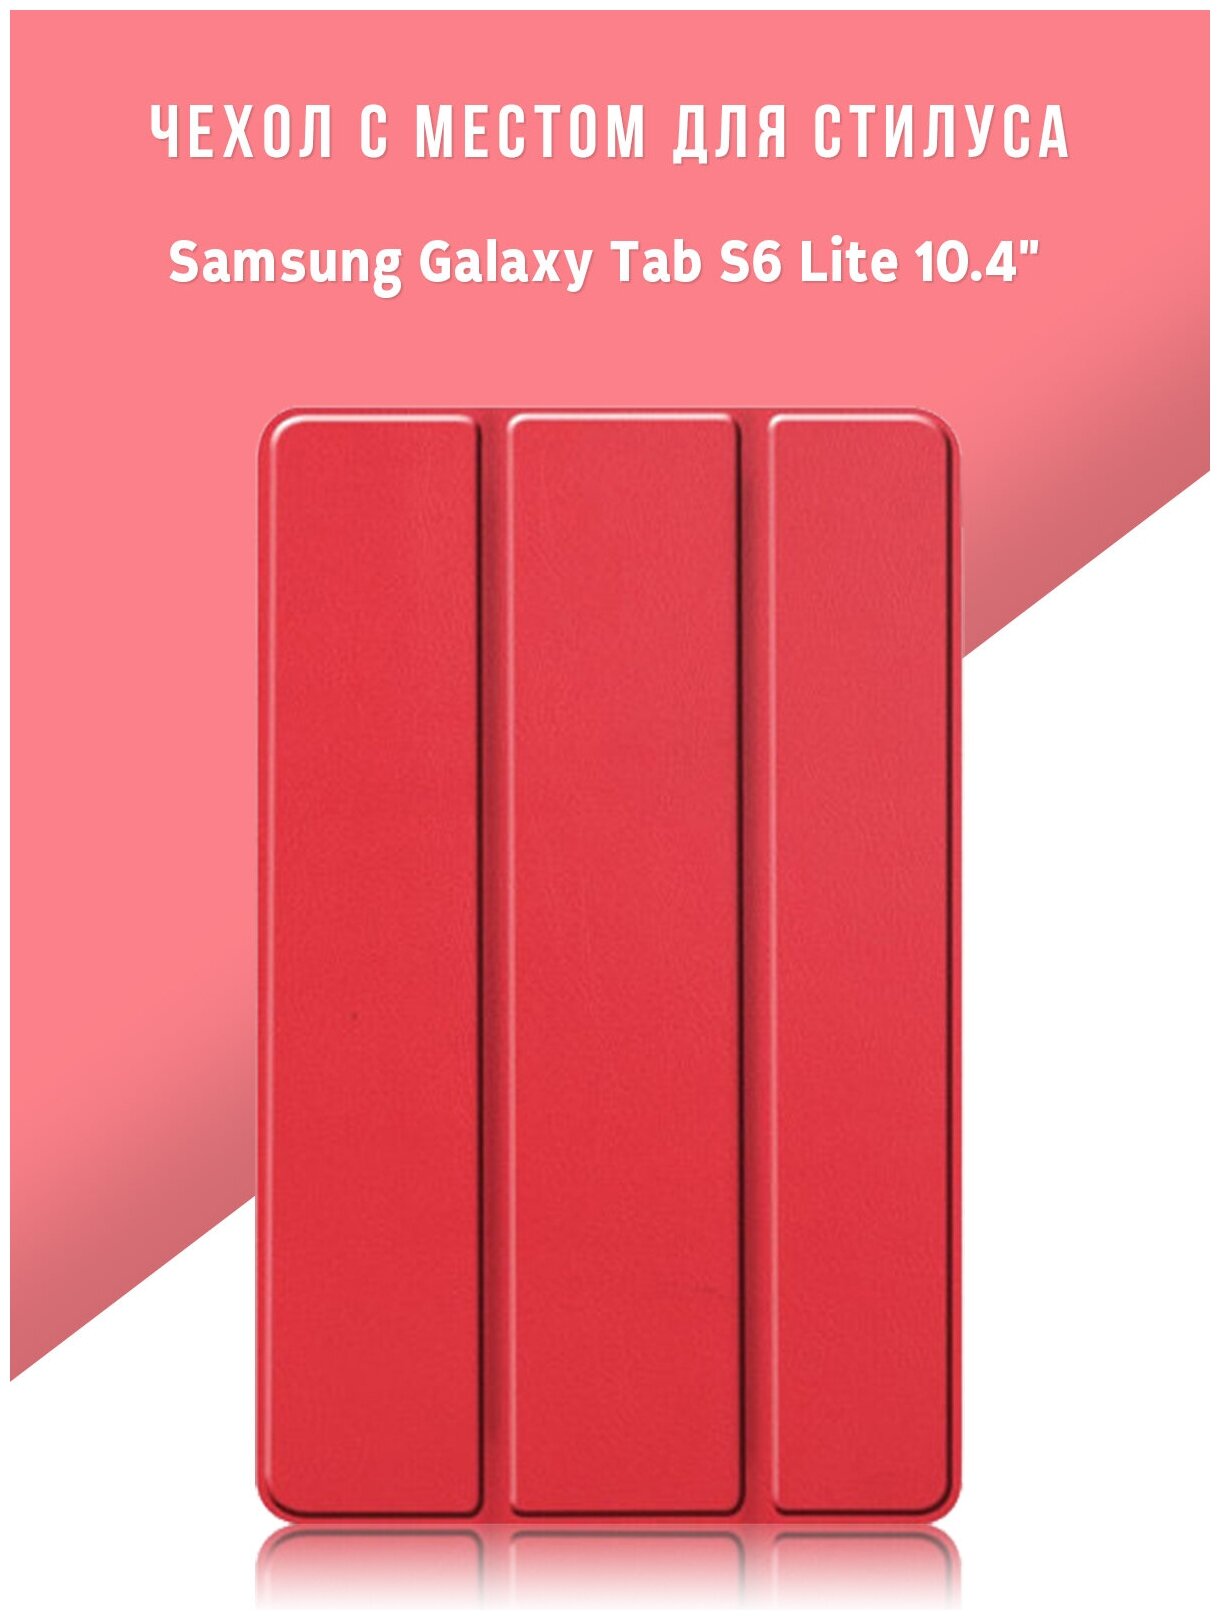 Чехол для планшета Samsung Galaxy Tab S6 Lite 10.4" с местом для стилуса S Pen, красный